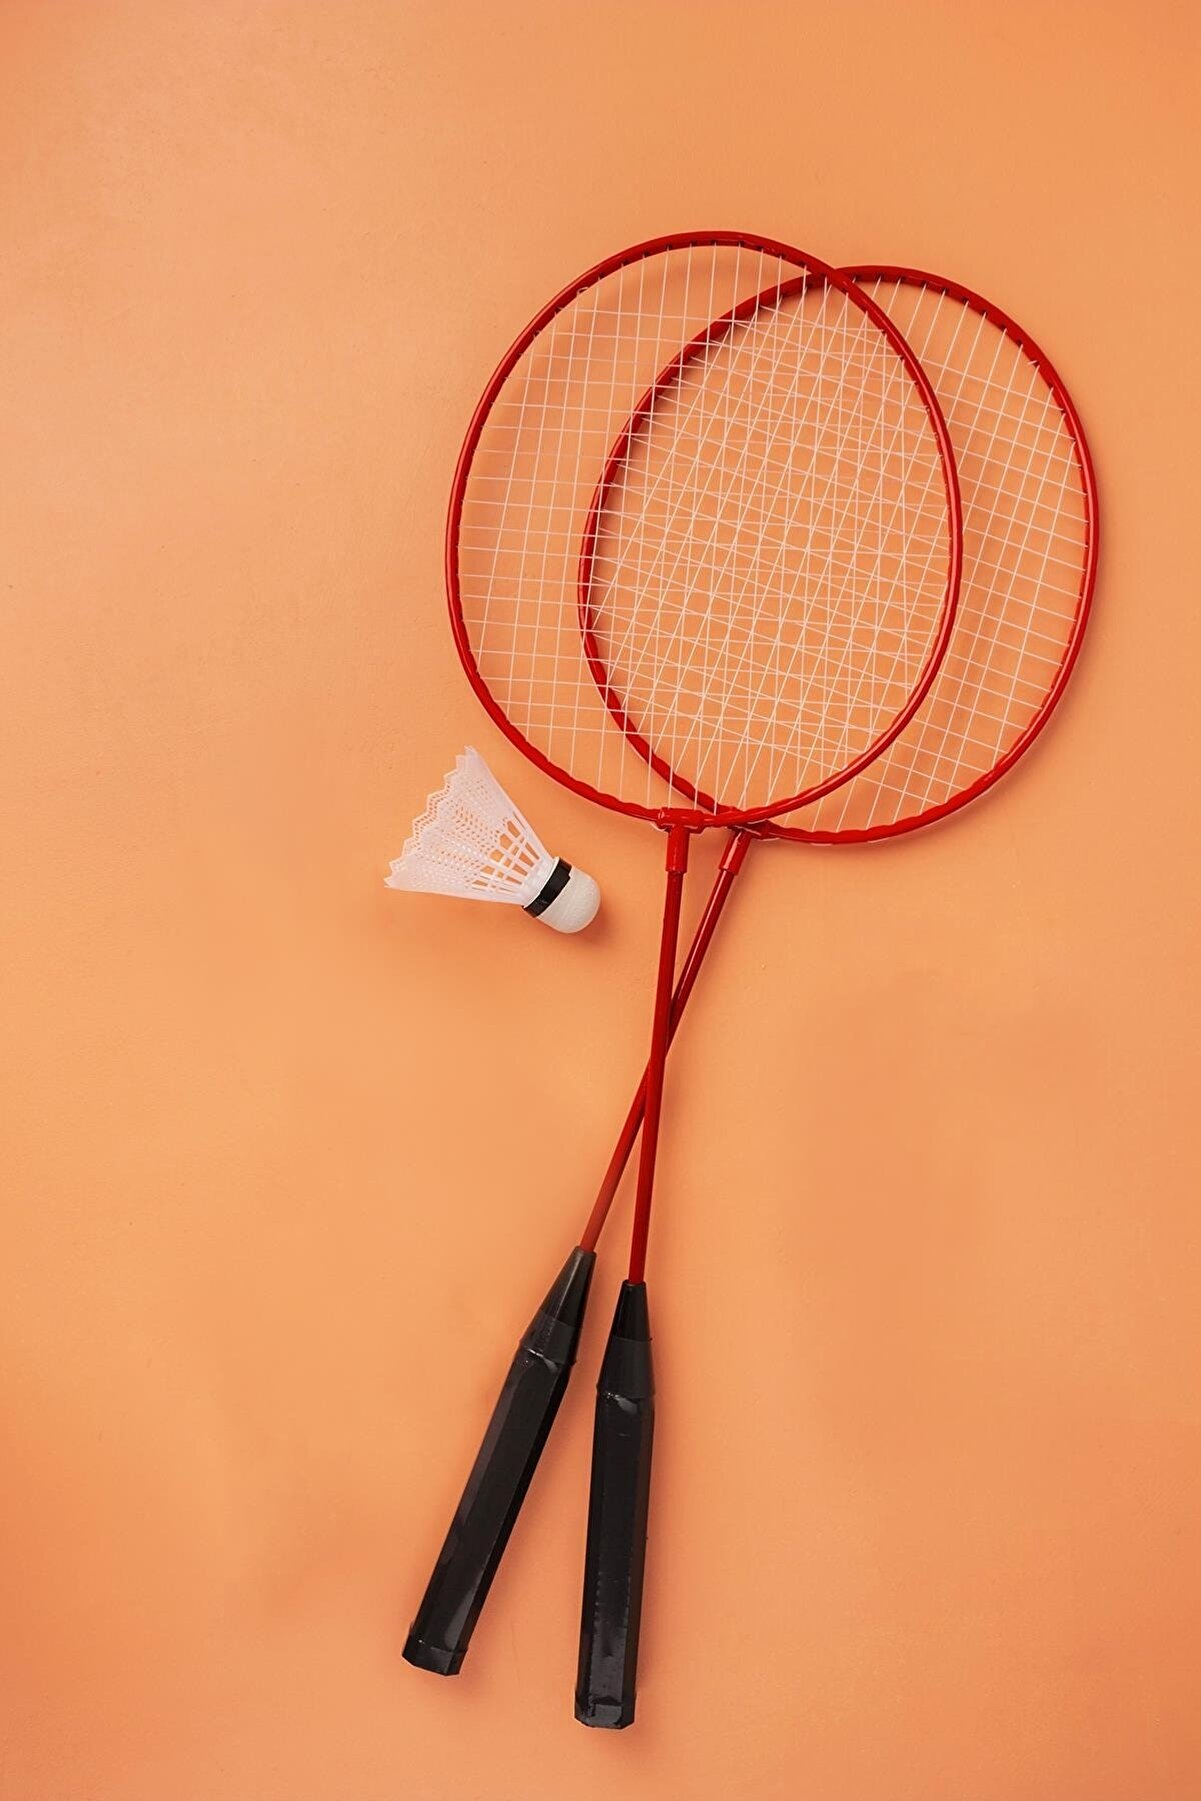 Hsport Turuncu A Kalite Unisex Badminton Raketi Iç-dış Saha Uygun Çantalı 2 Adet Ve Top Hediyeli